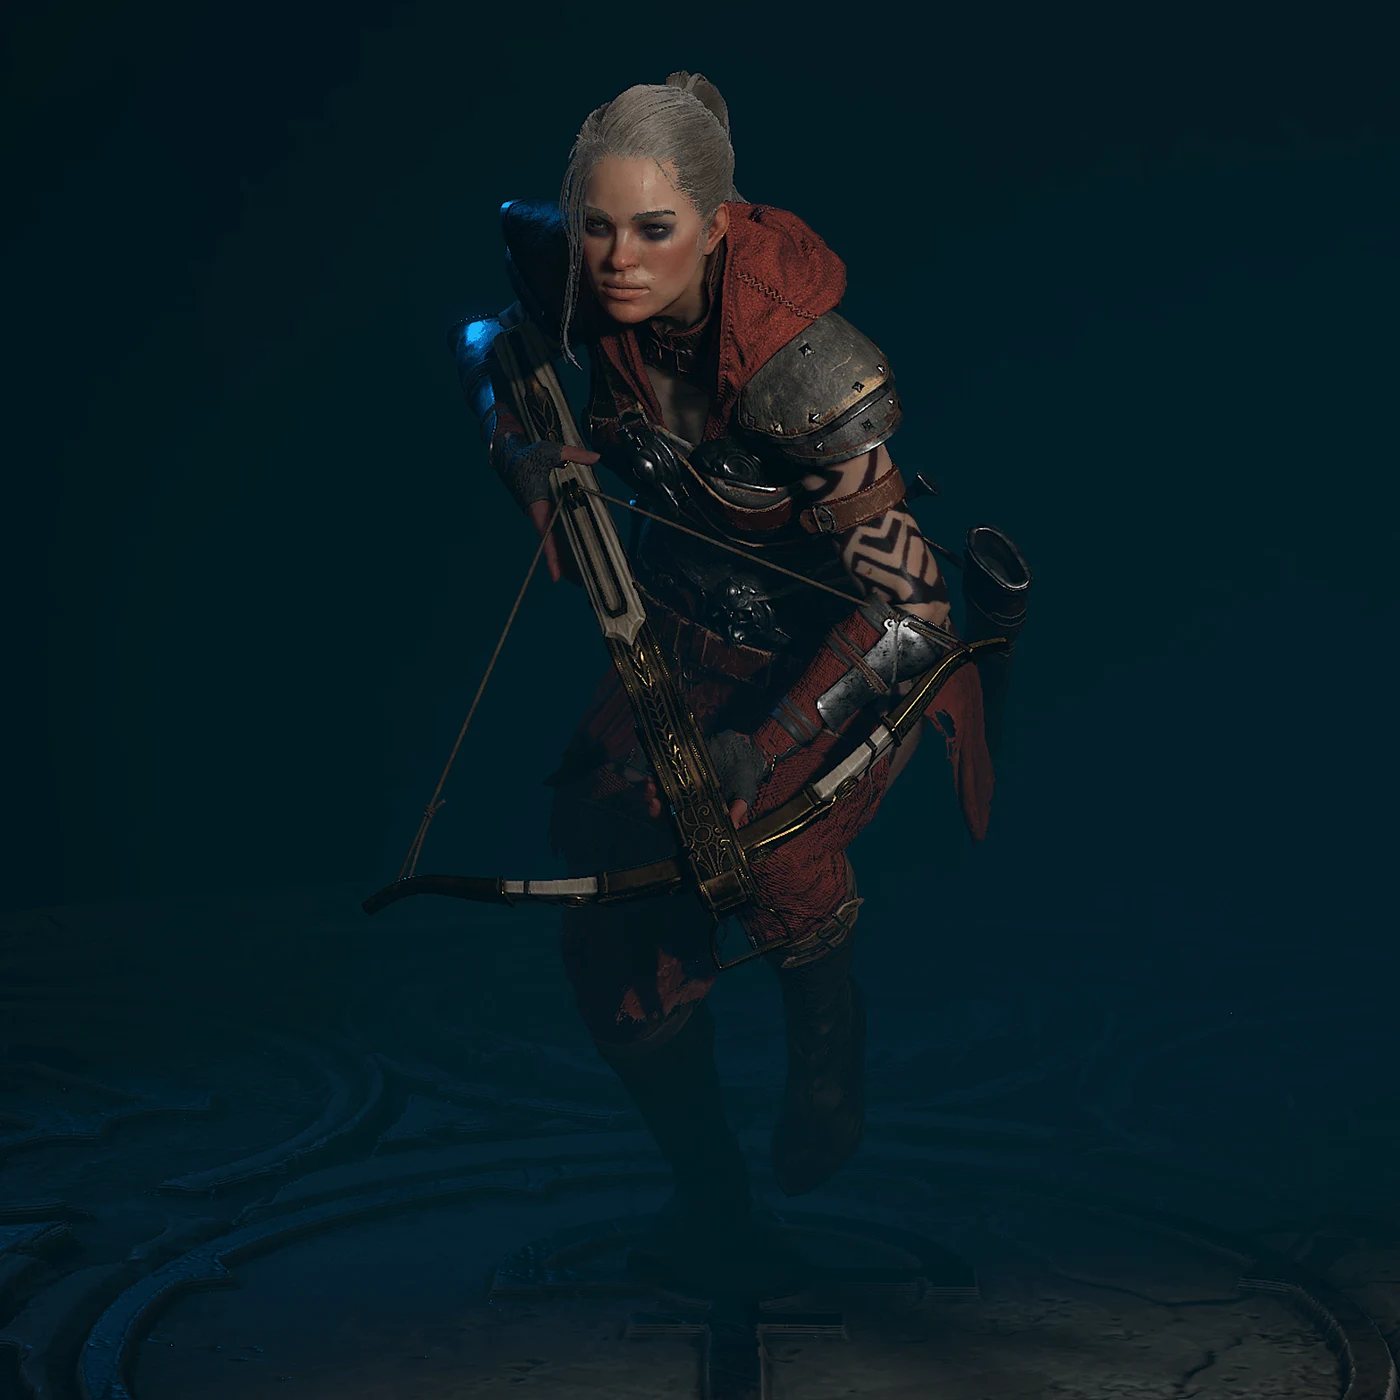 Rogue wielding a crossbow in Diablo 4